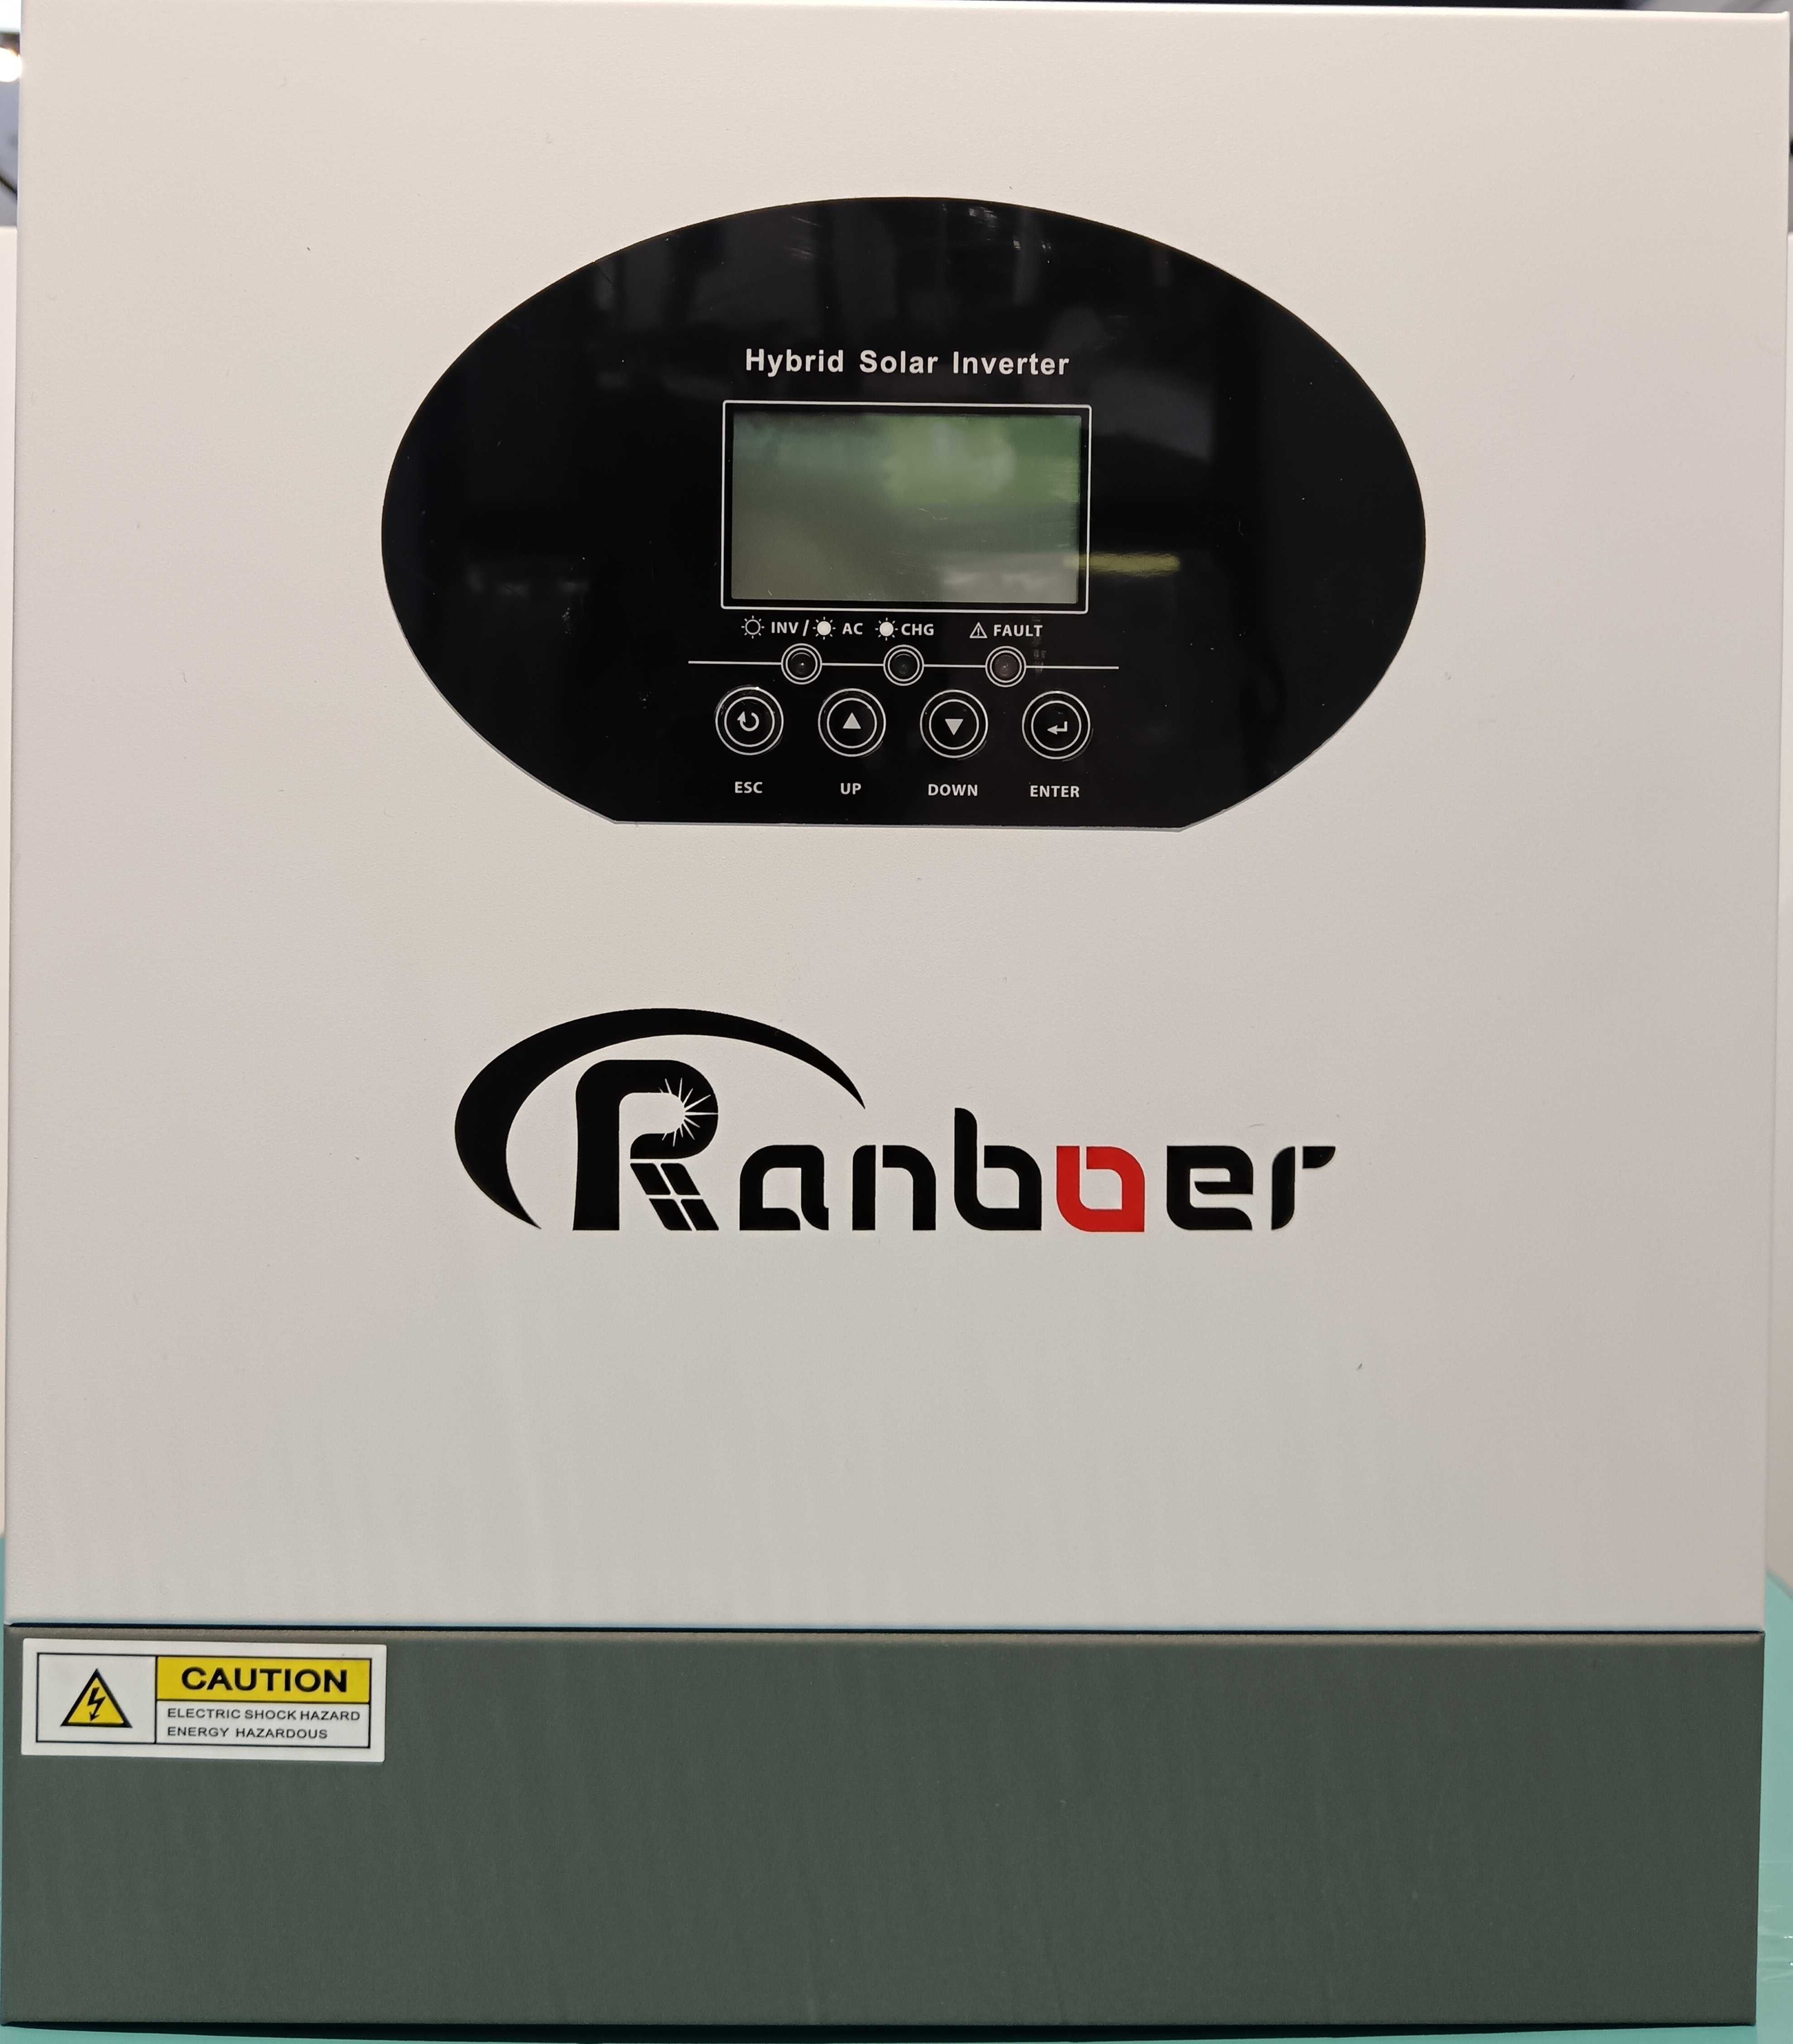 Ranboer润博离网逆变器3.5KW光伏转换器控制器一体机图